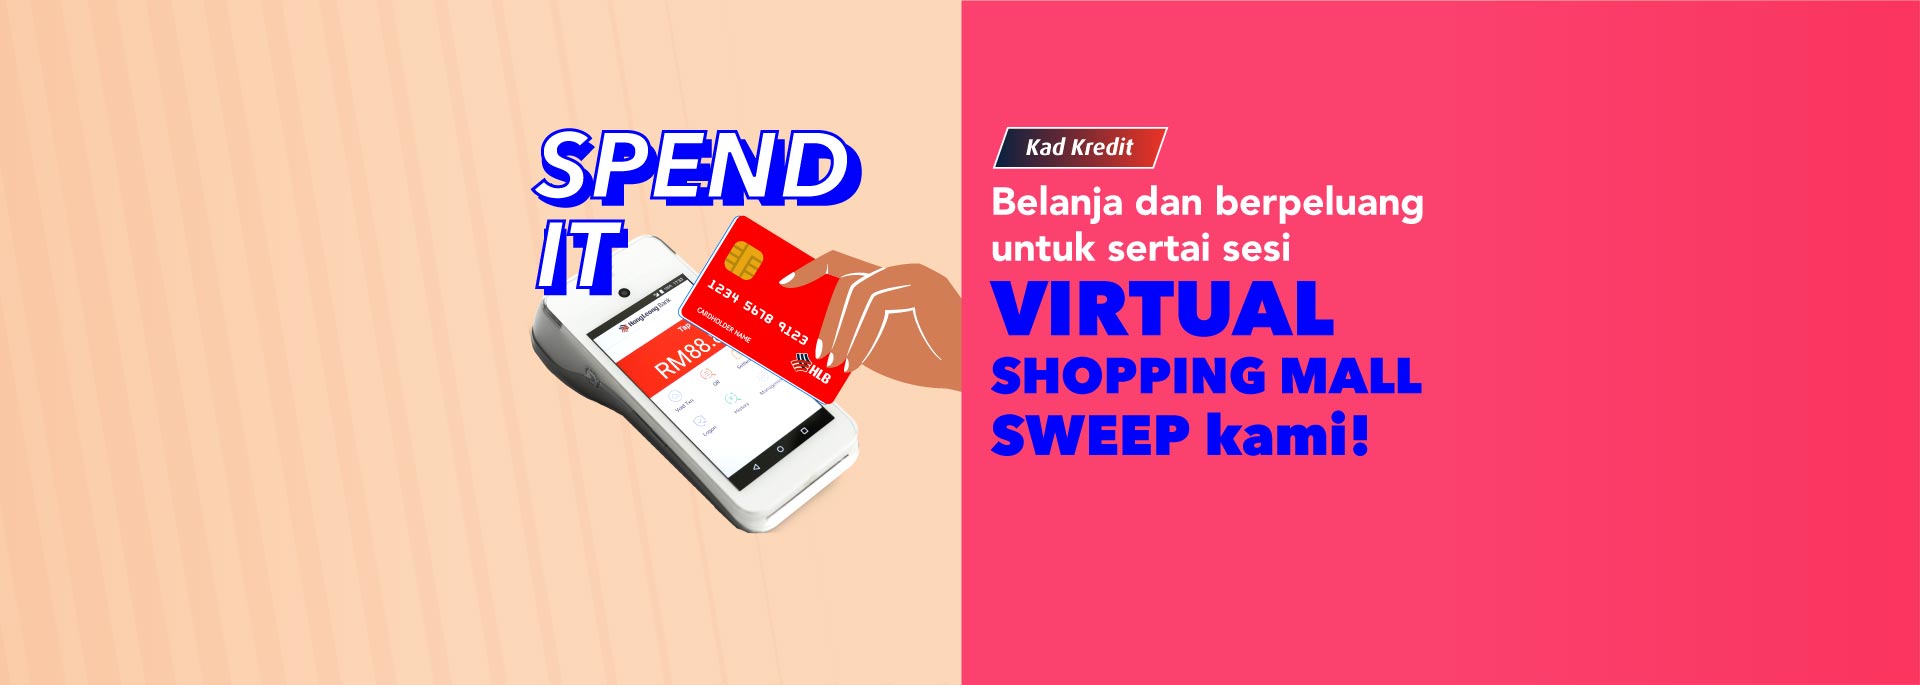 Belanja & Berpeluang untuk Sertai Sesi Virtual Shopping Mall Sweep!